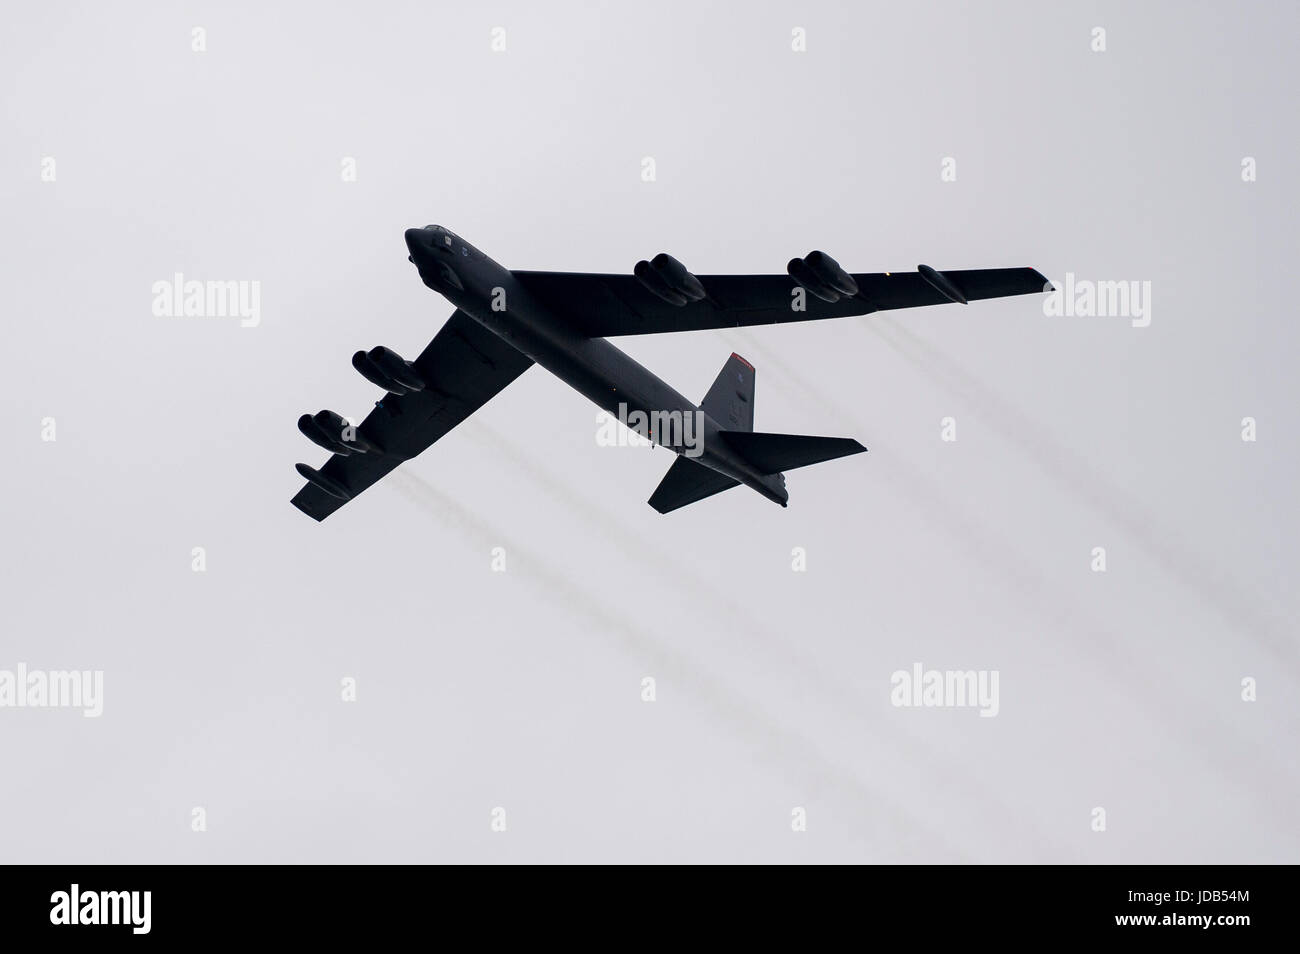 Un bombardier stratégique à long rayon d'Boeing B-52 Stratofortress pendant la 45e édition de l'exercice BALTOPS 2017 Opérations de la Baltique à Ustka, Polan Banque D'Images